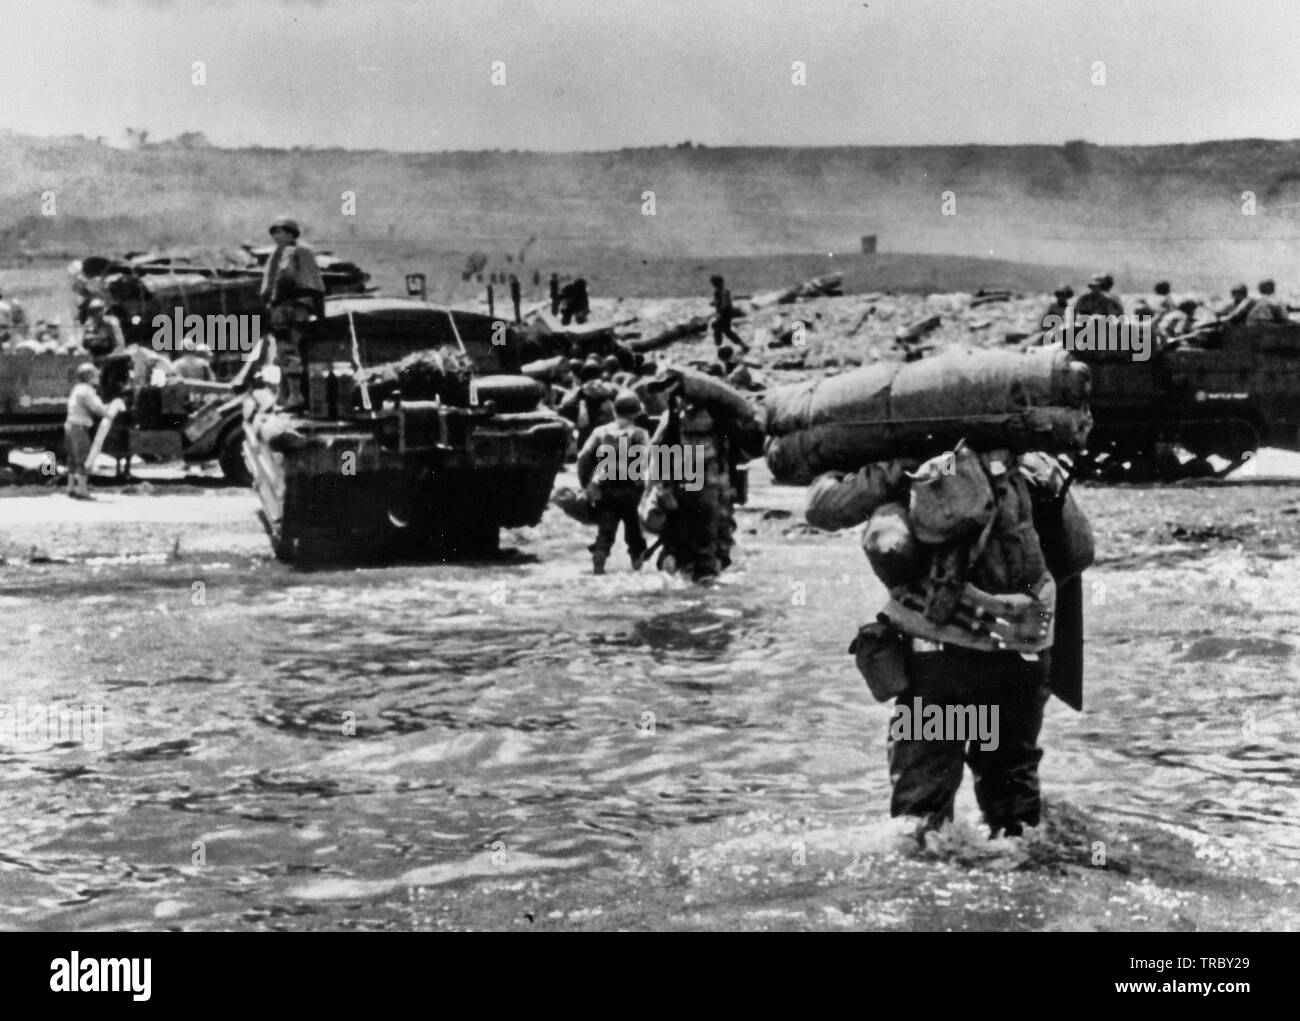 American assault Truppen mit voller Ausrüstung bewegen Sie auf Omaha Beach hinter schweren Material einschließlich der Hälfte - Titel und DUKWS. Rauch im Hintergrund ist von Naval geschützfeuer Unterstützung bei der Landung. Der Normandie. Juni 6, 1944. Stockfoto